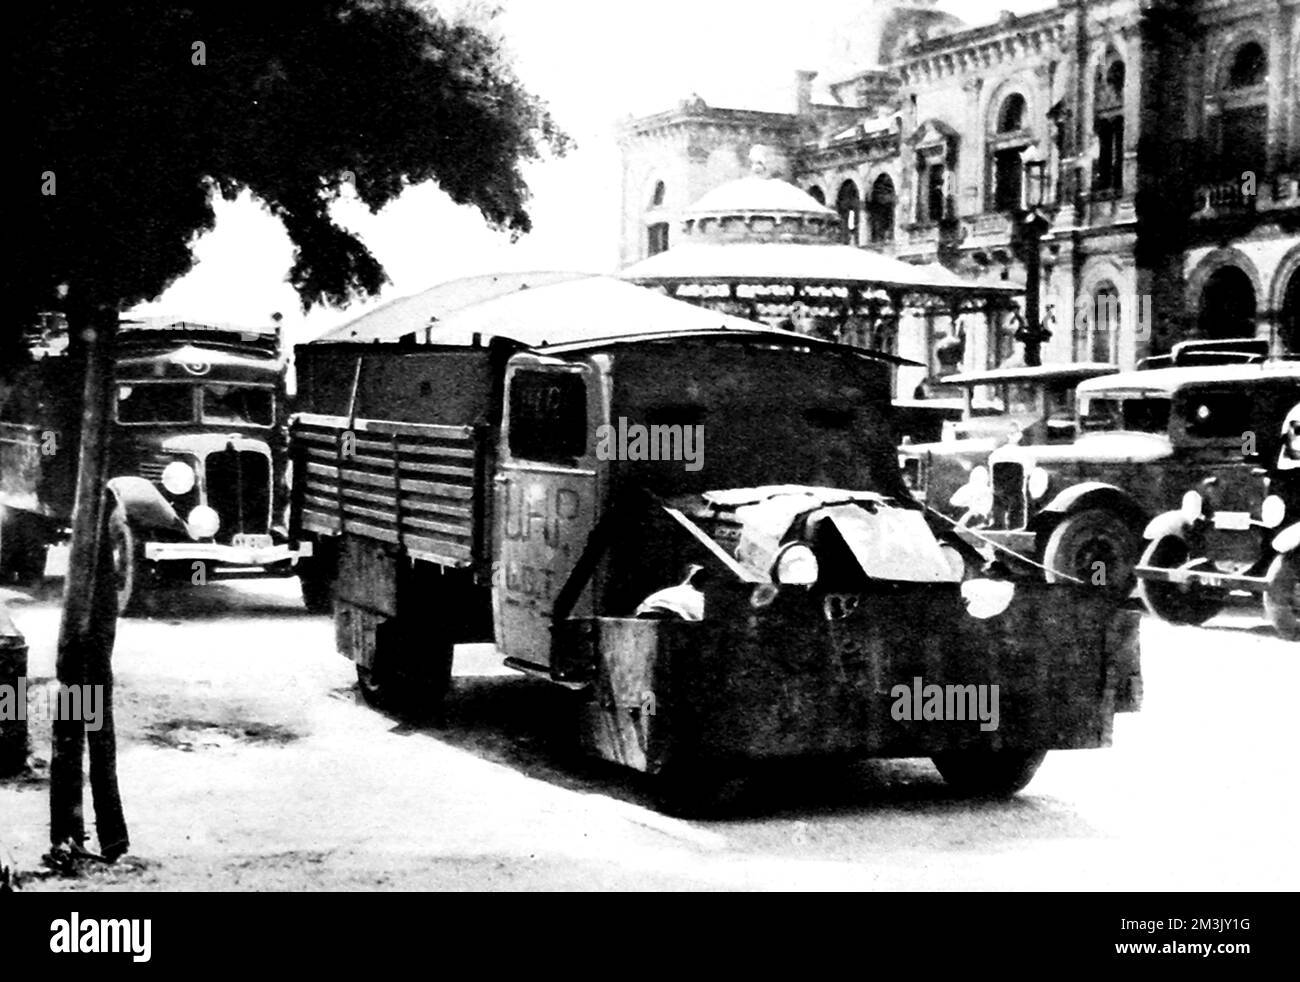 Fotografía que muestra un camión blindado usado por la 'Unión General de Trabajadores' ('UGT') y los 'Unidos Hermanos Proletarios' ('UHP'), fotografiado en San Sebastián, norte de España, agosto de 1936. En las primeras semanas de la guerra civil, el republicano tuvo que improvisar el transporte blindado para contrarrestar a las fuerzas nacionalistas mejor equipadas. La UGT y la UHP fueron dos de los sindicatos que lucharon por el bando republicano durante la Guerra Civil Española de 1936-39. Fecha: 1936 Foto de stock